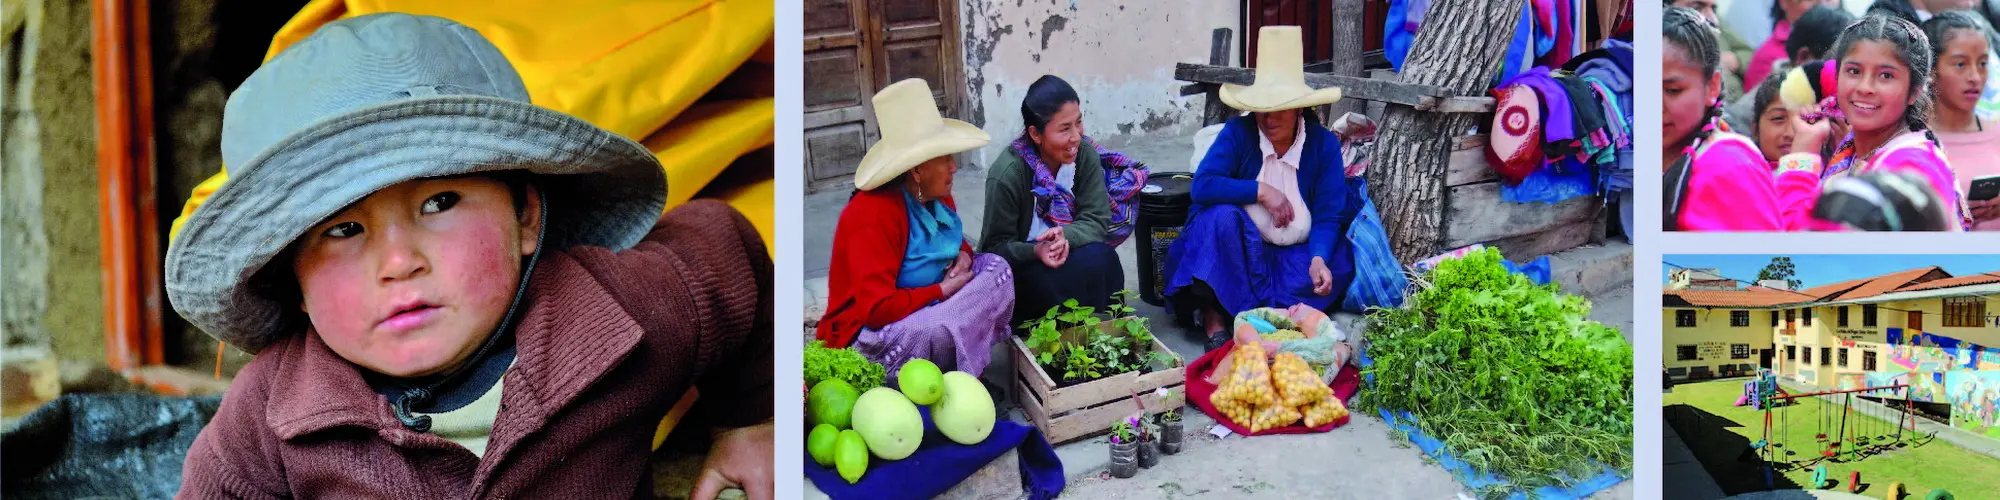 Fotocollage mit Menschen in Peru und Kinderheim "Santa Dorotea" in Caramaja